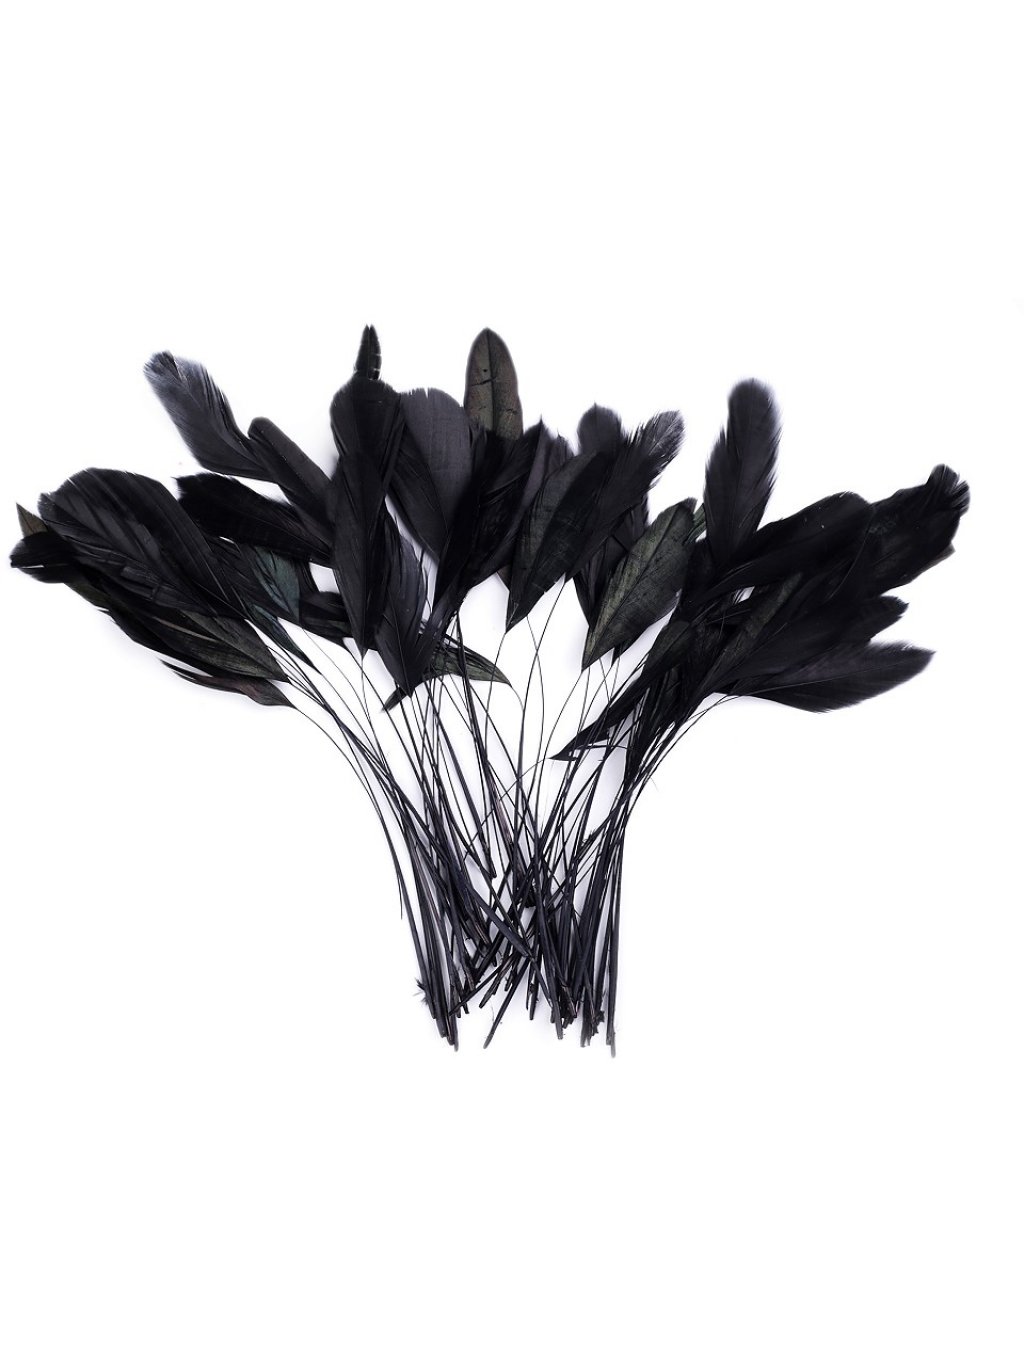 Kohoutí peří černé 13-18 cm